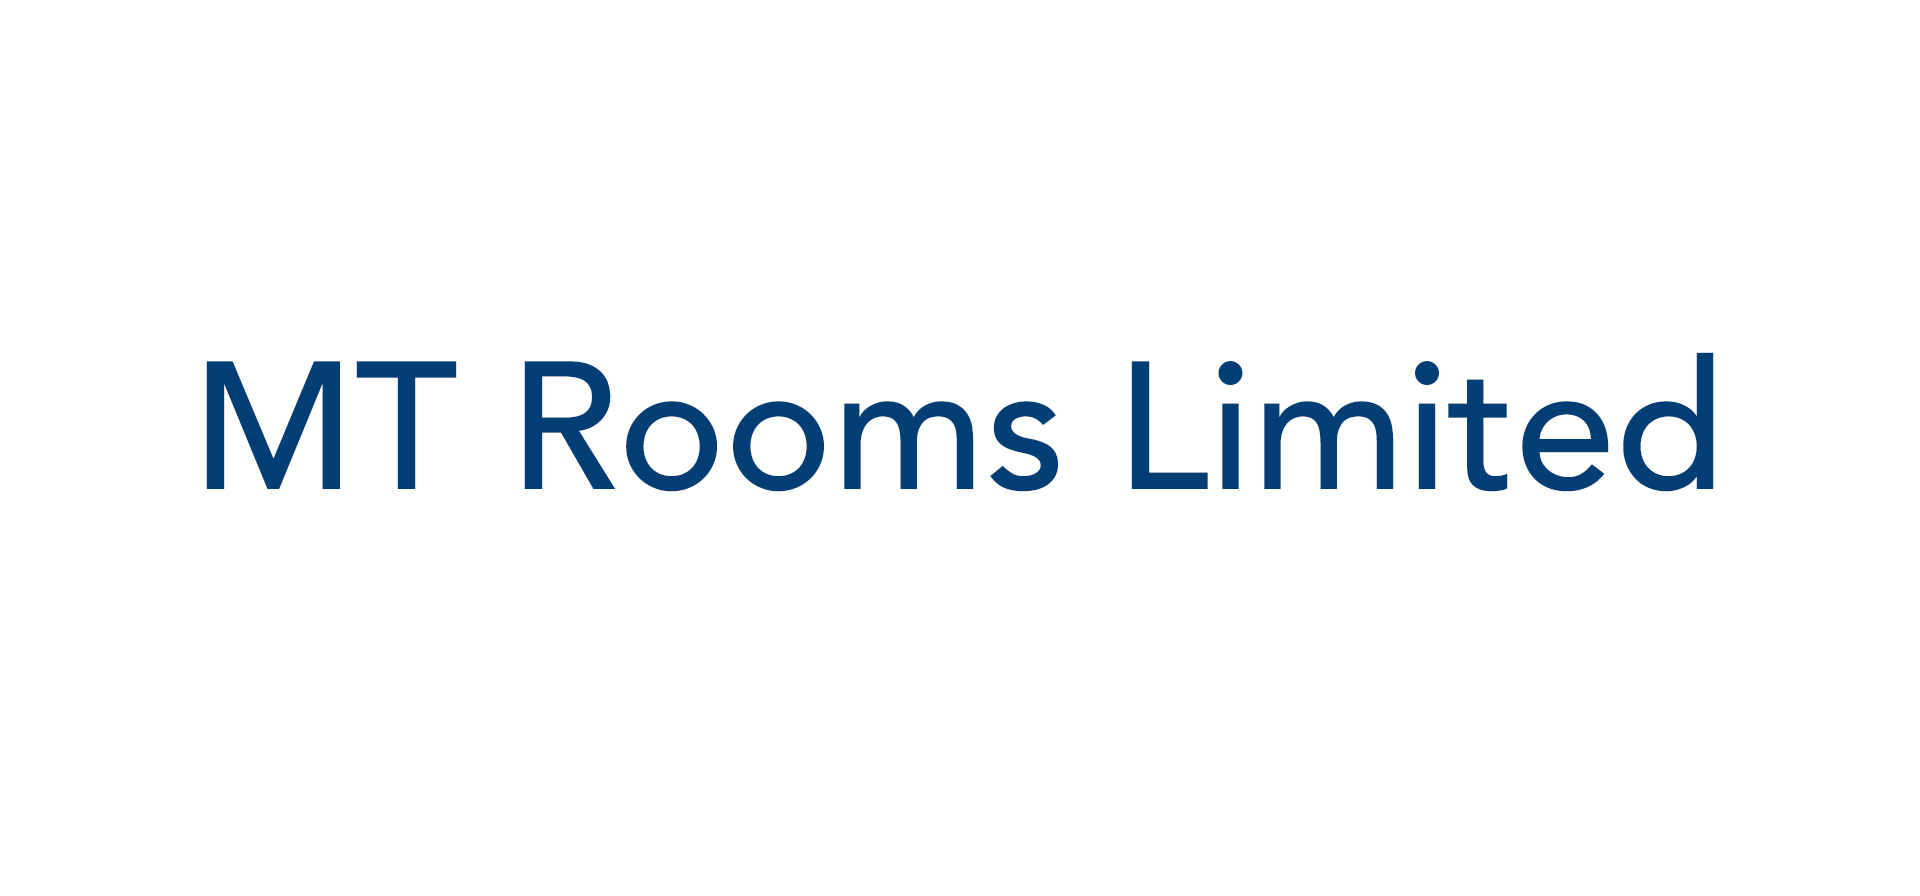 M T Rooms Ltd